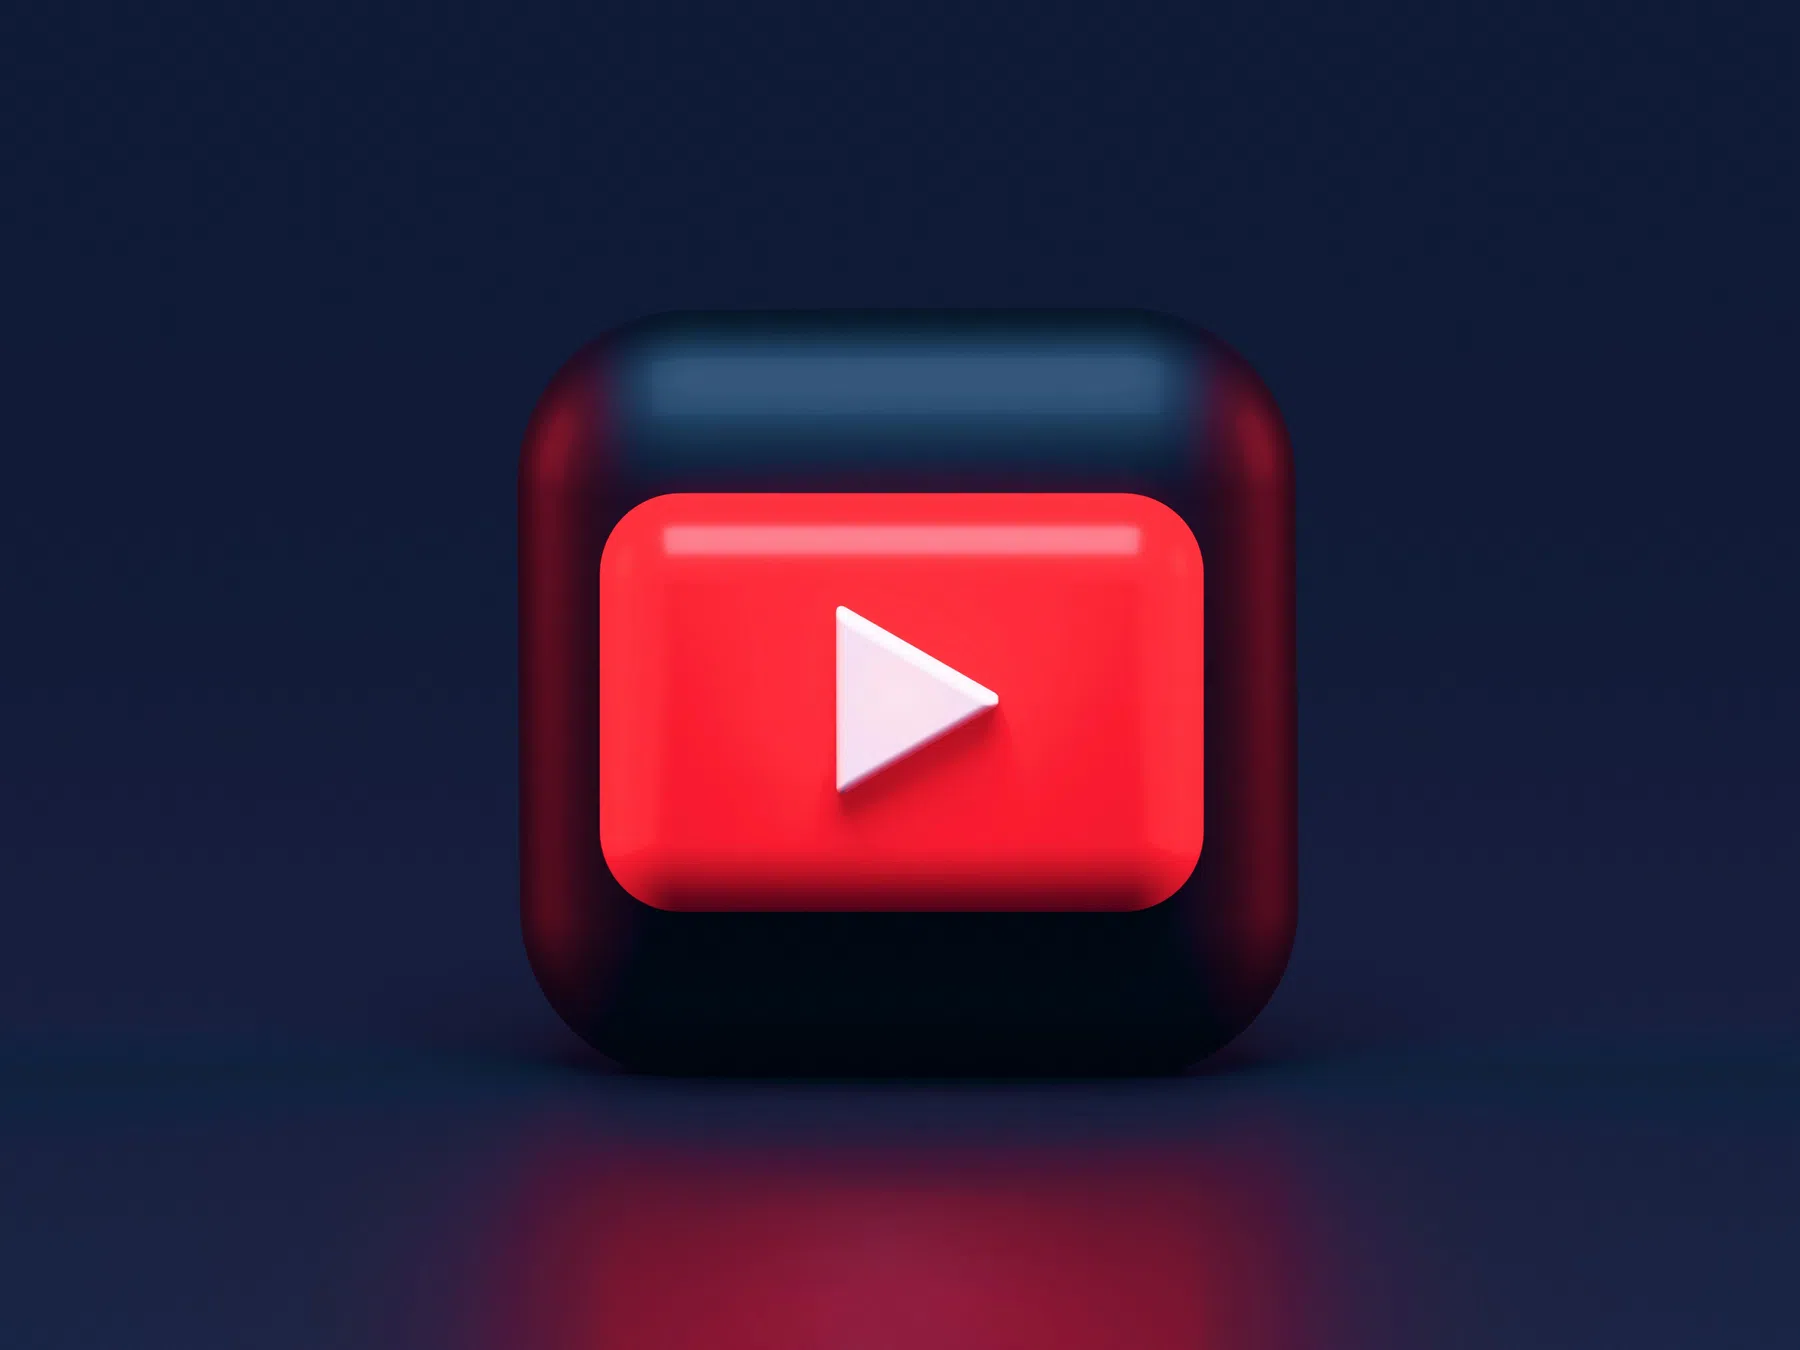 Hoogtepunten in YouTube-video's nu makkelijker te vinden op je televisie